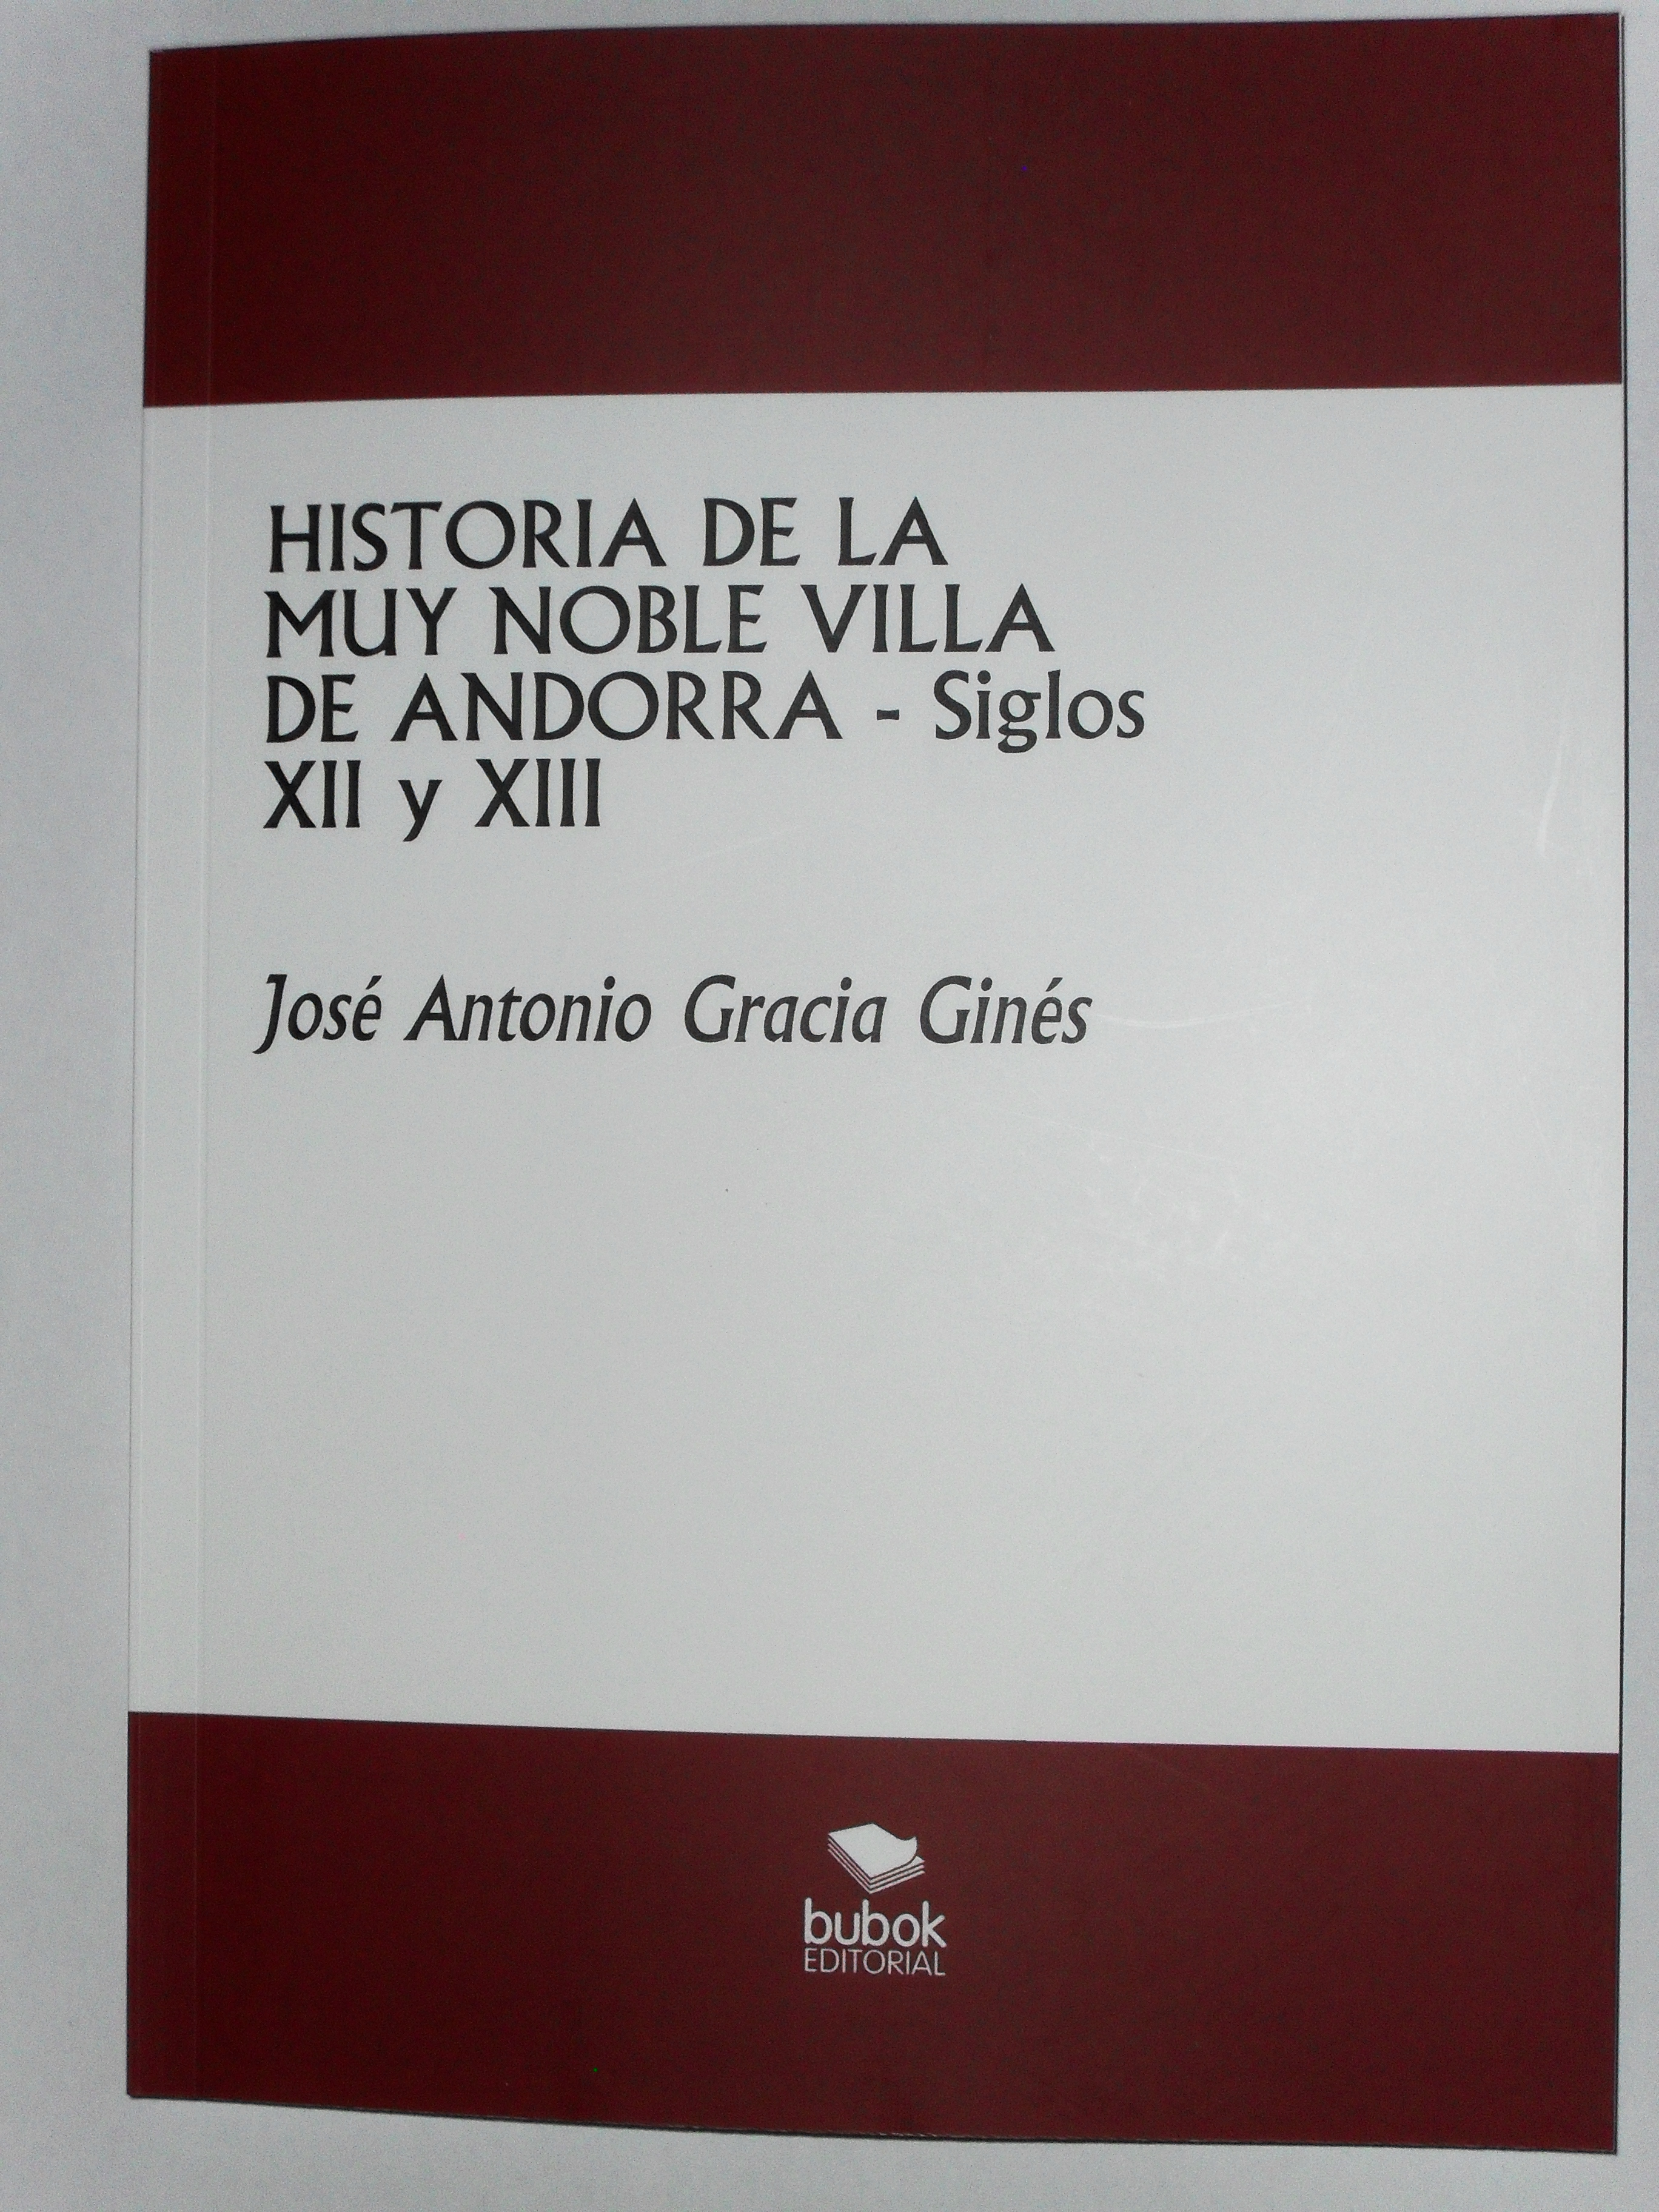 Publicación del primer tomo de la Historia de Andorra (Te) - Siglos XII y XIII